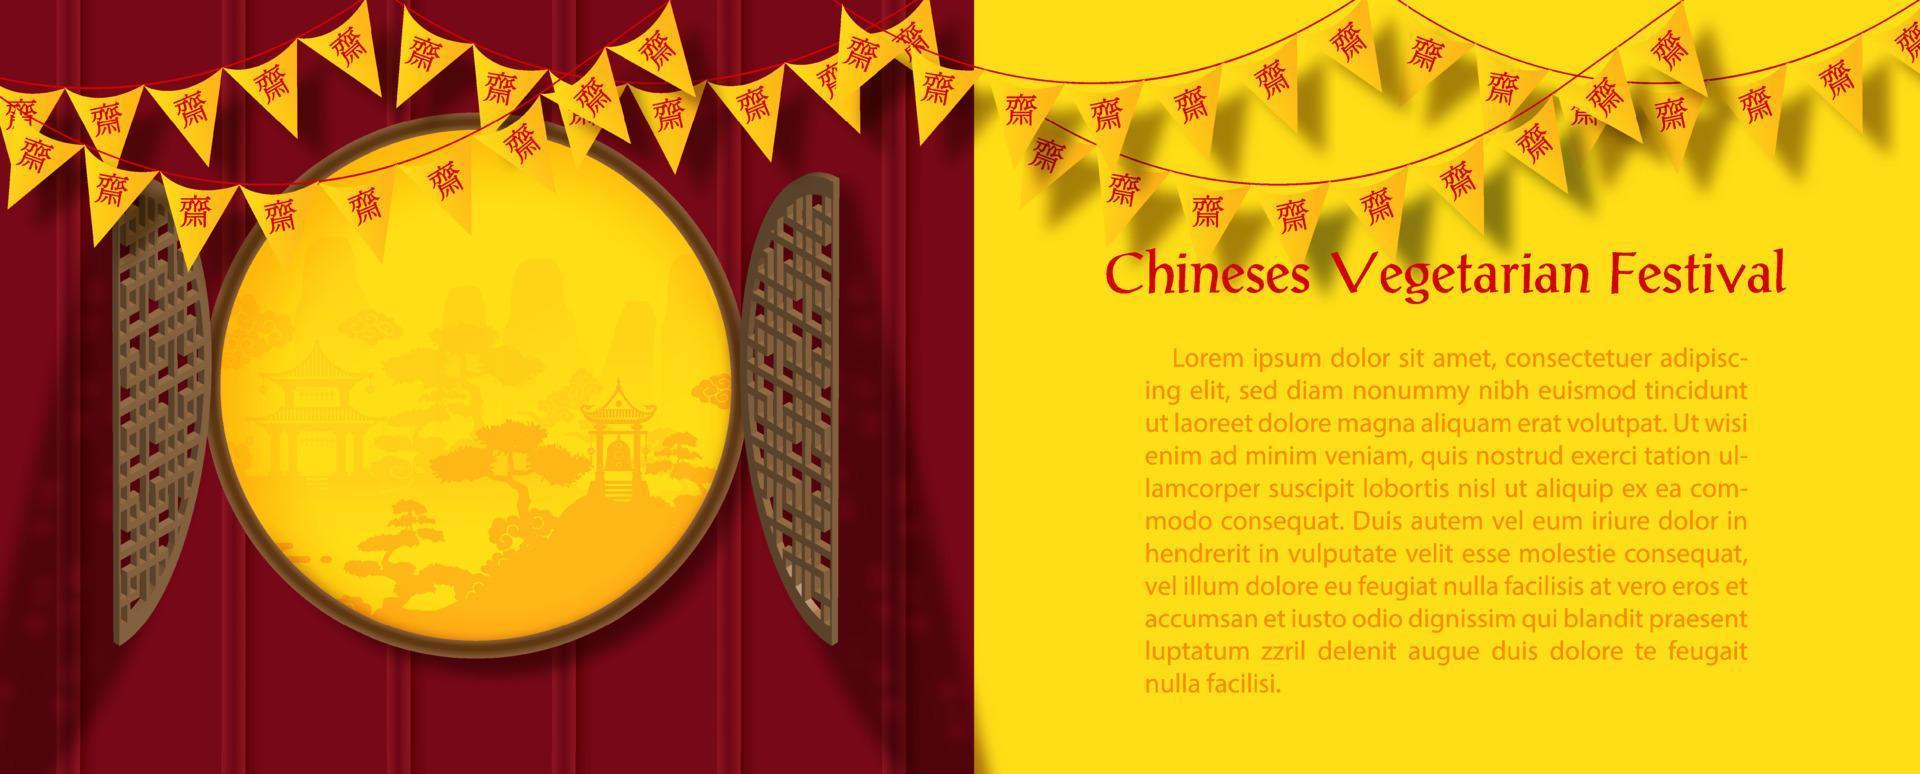 bandeira do triângulo do festival vegetariano chinês em portas de janela antigas 3d com textos de exemplo de vista de paisagem e fundo amarelo. letras chinesas significa jejuar para adorar buda em inglês. vetor